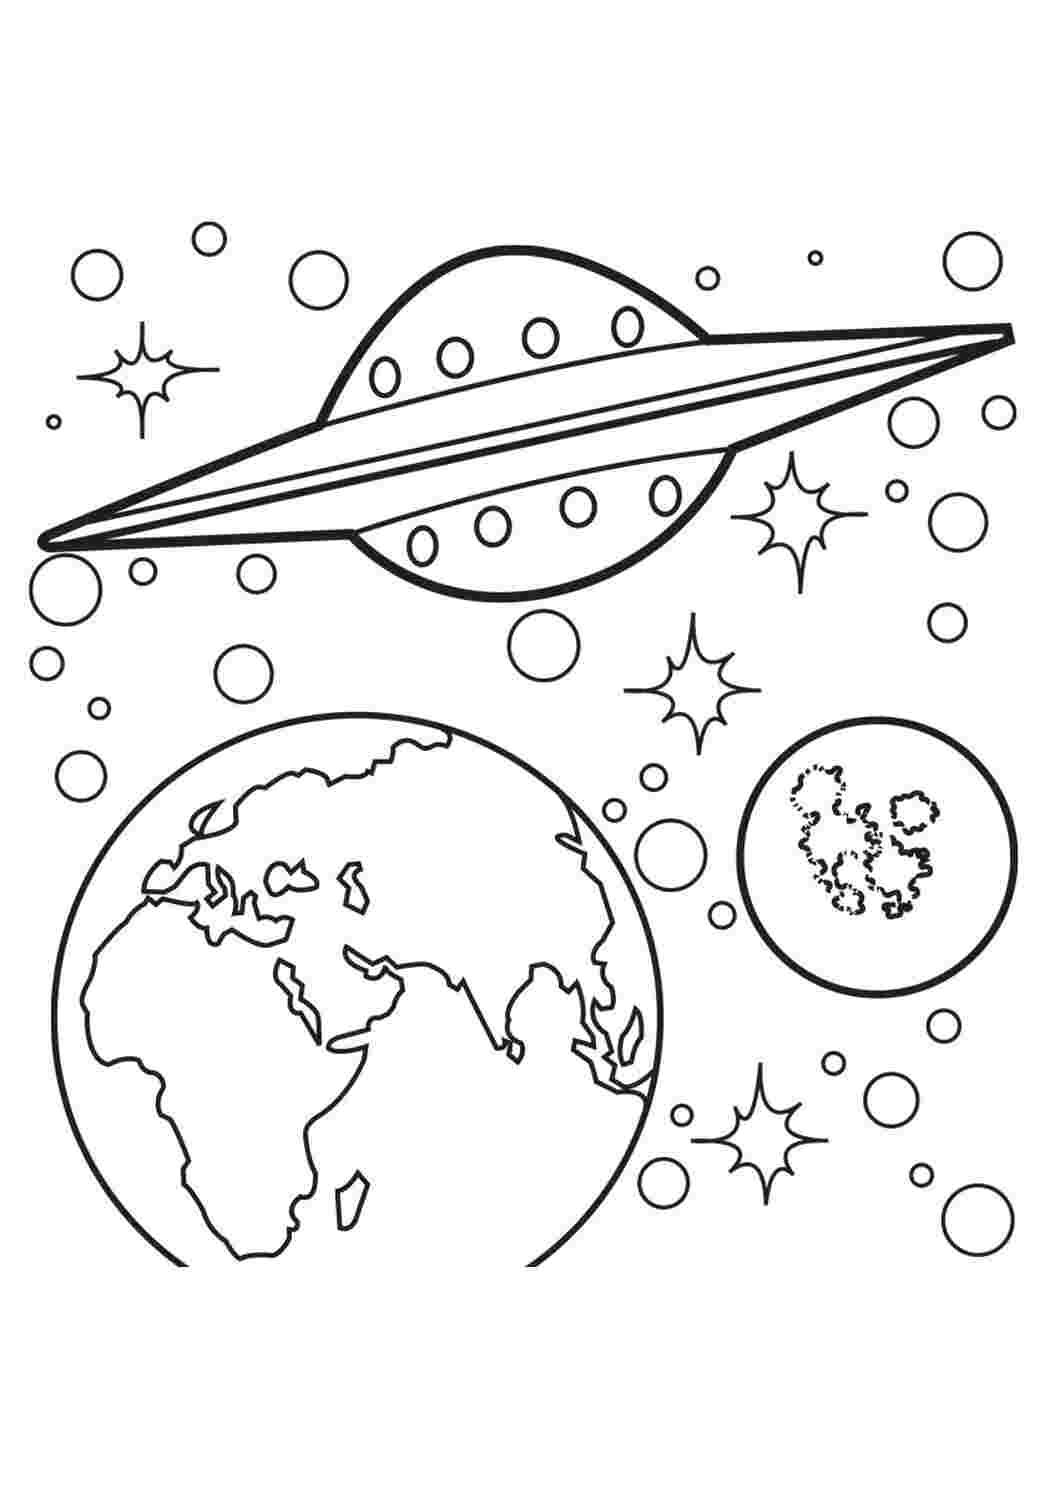 Раскраски картинки на рабочий стол онлайн Летающая тарелка, планета земля, планеты, звезды, космос Раскраски для мальчиков